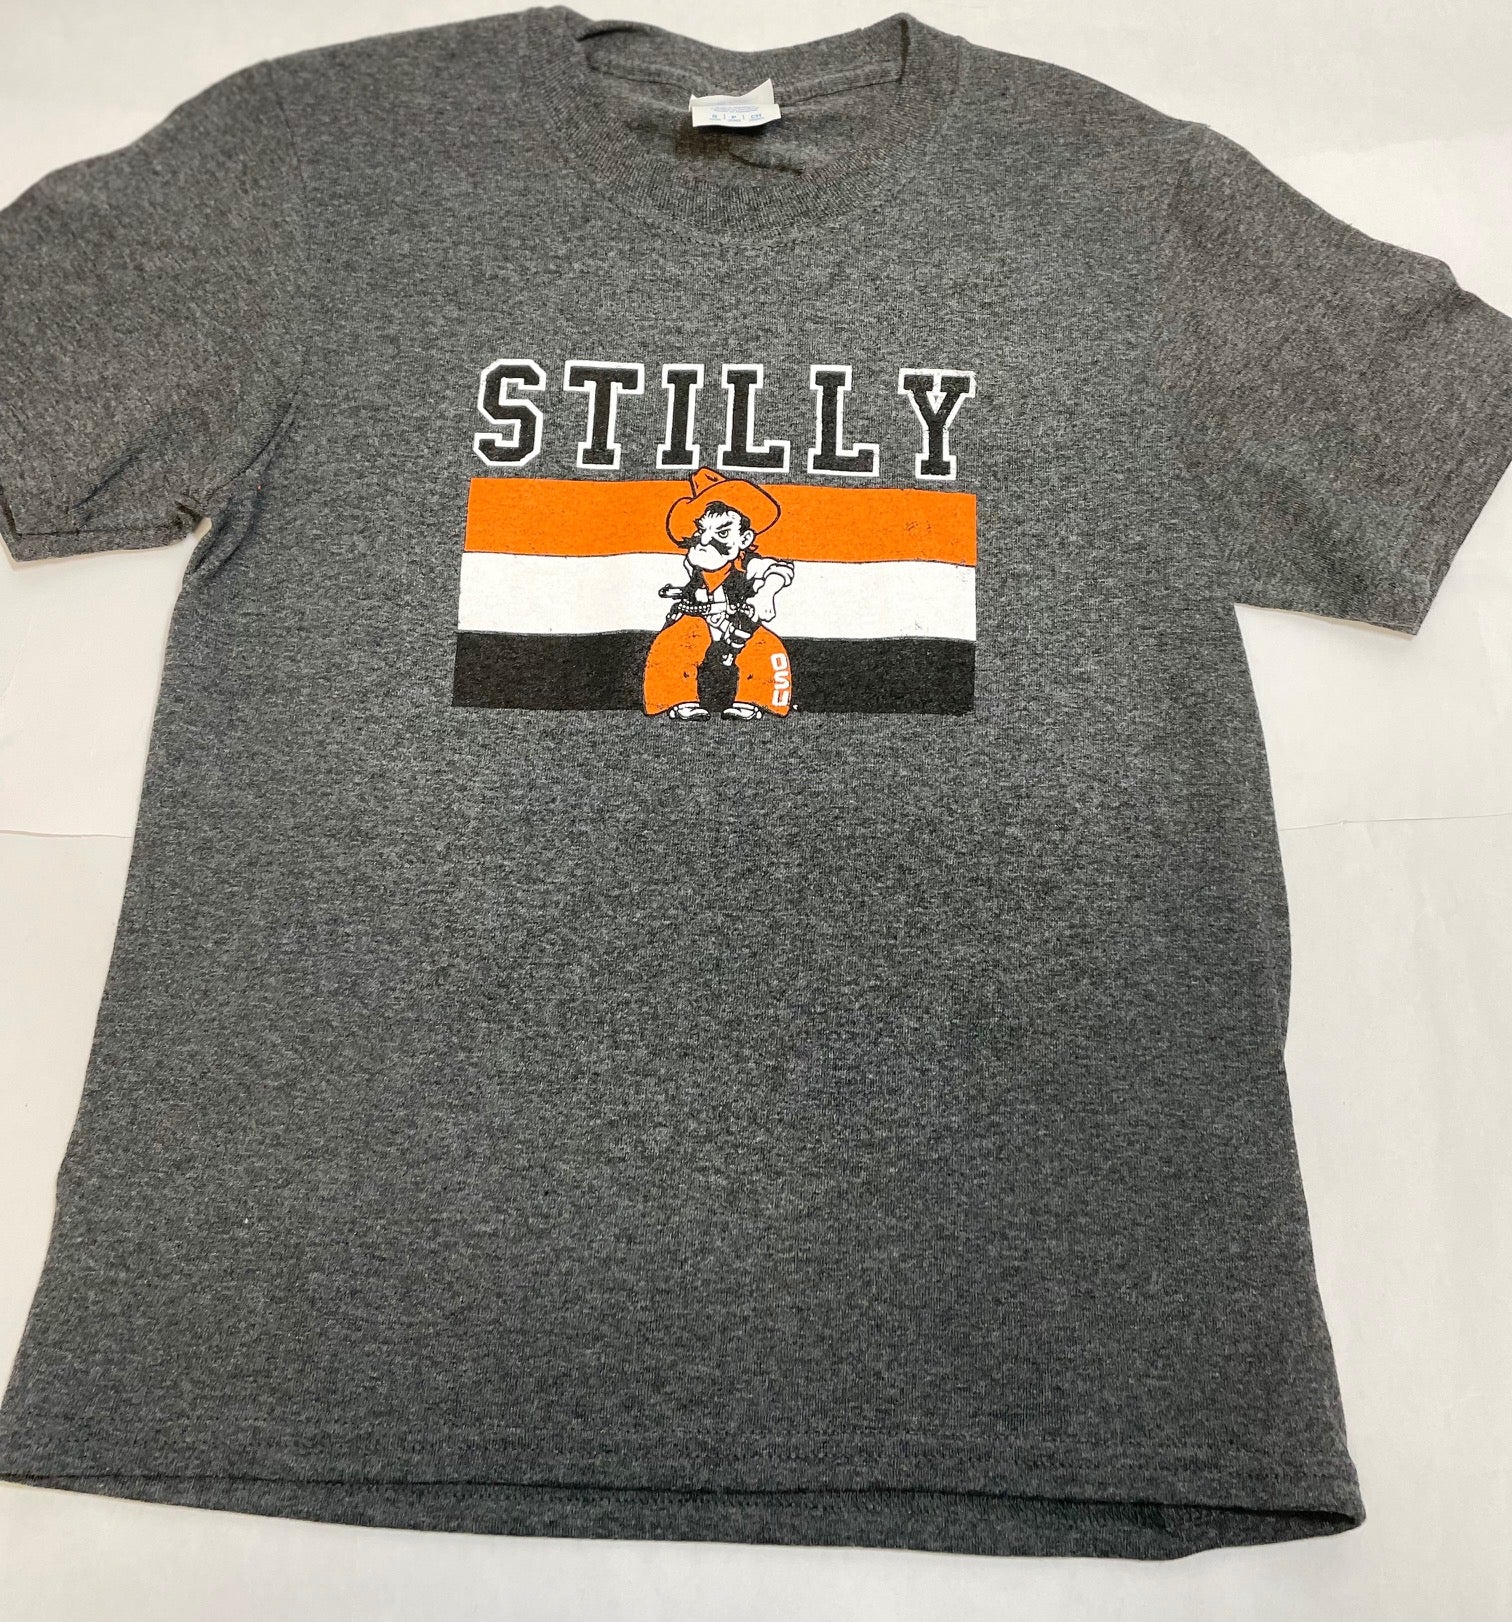 Stilly T-shirt – For Pete's Sake